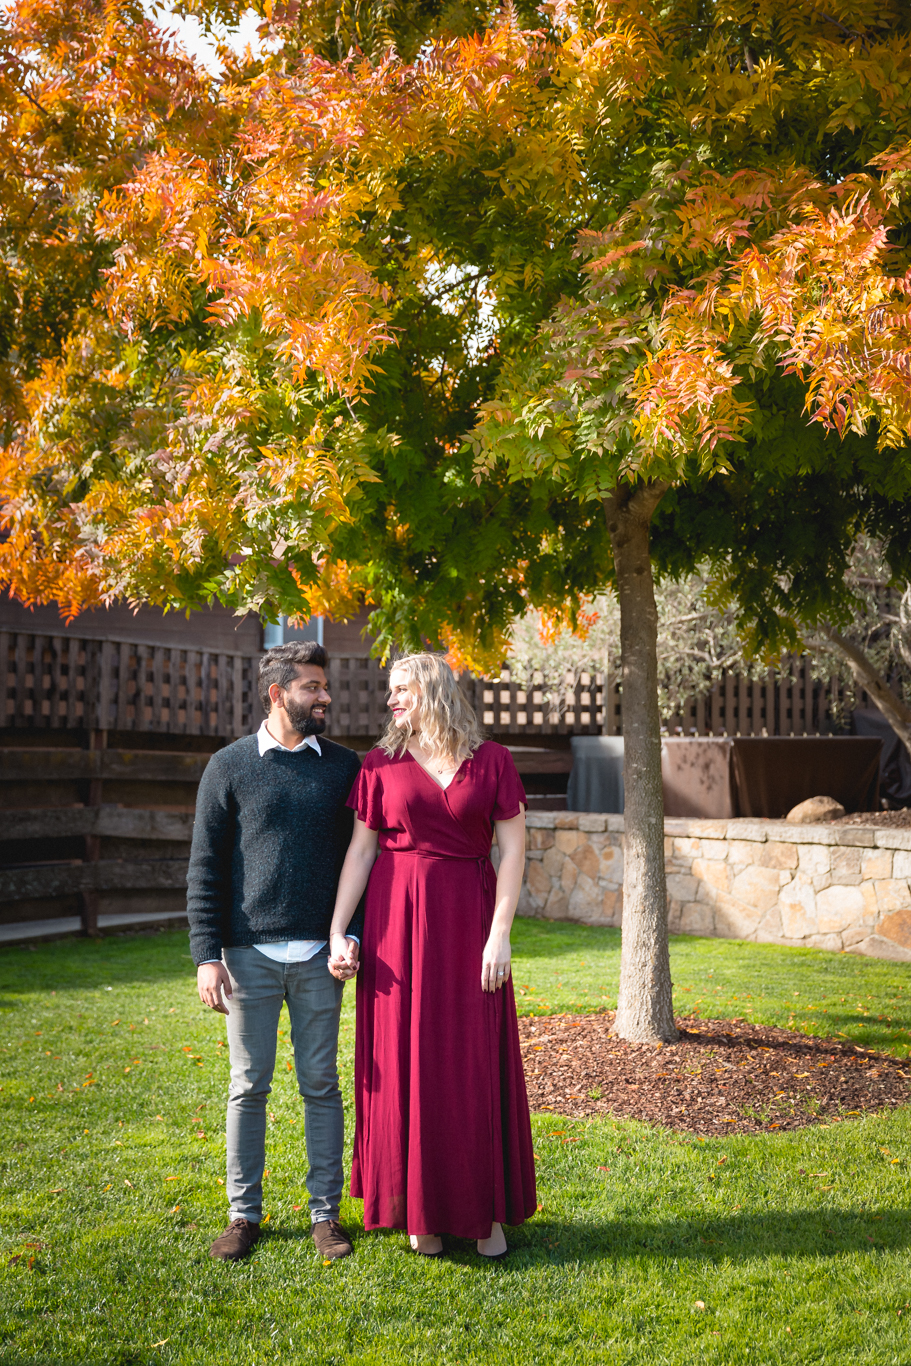 2018.12.03_Ashir-and-Emily-Engagement-Photography-@heymikefrancis-napa-valley-wedding-sacremento-california-heyfrancis-mikefrancis-7529.jpg